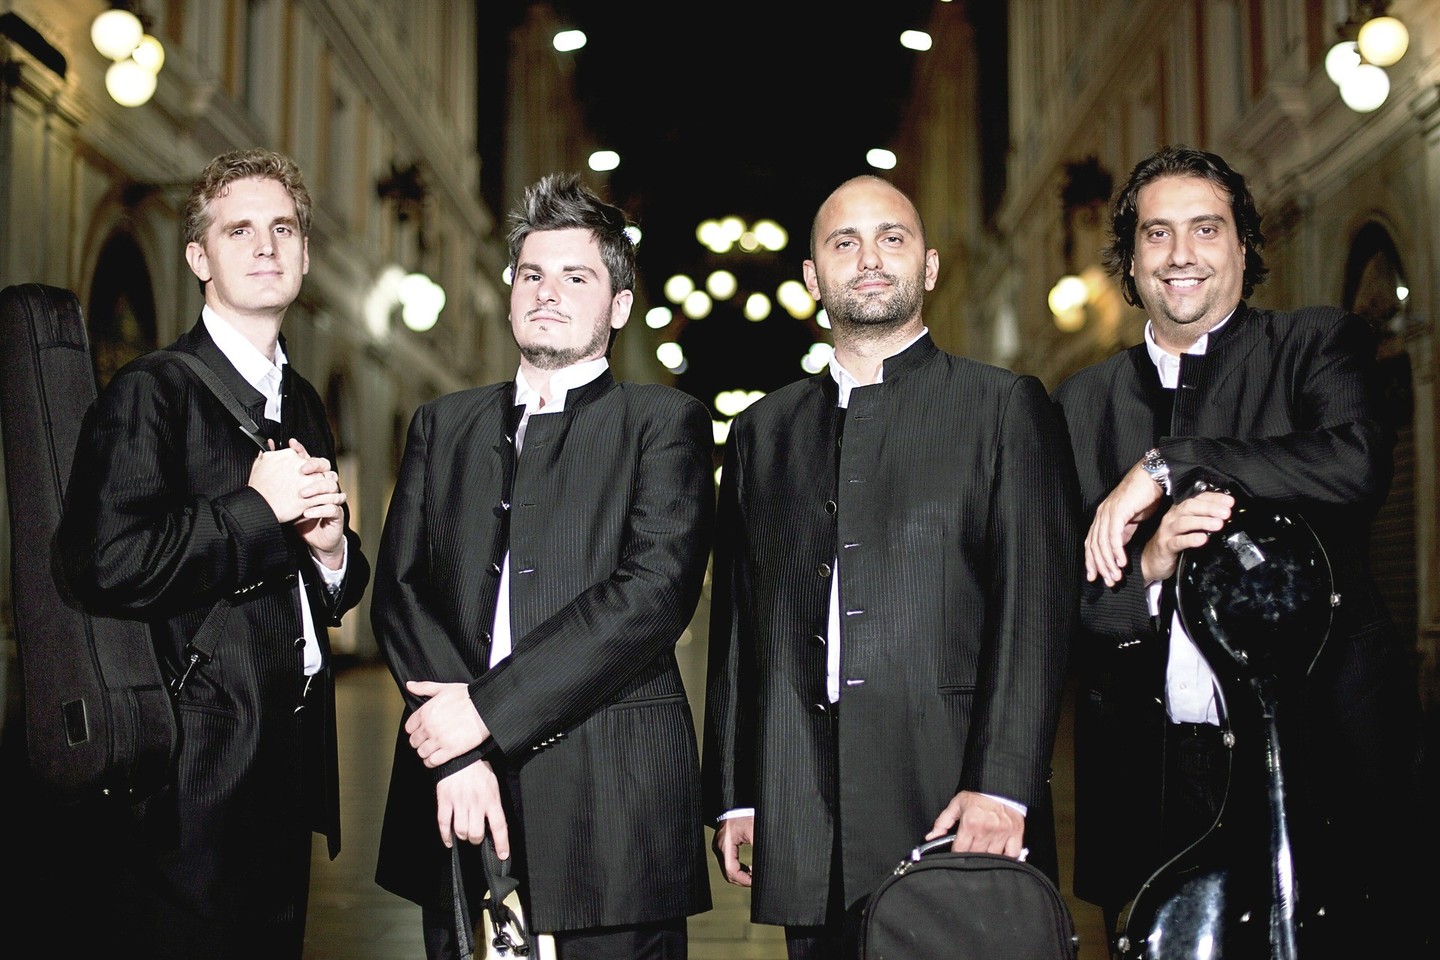 2000 m. susibūręs Kremonos kvartetas vadinamas vienu įdomiausių kamerinių ansamblių pasaulio scenose.